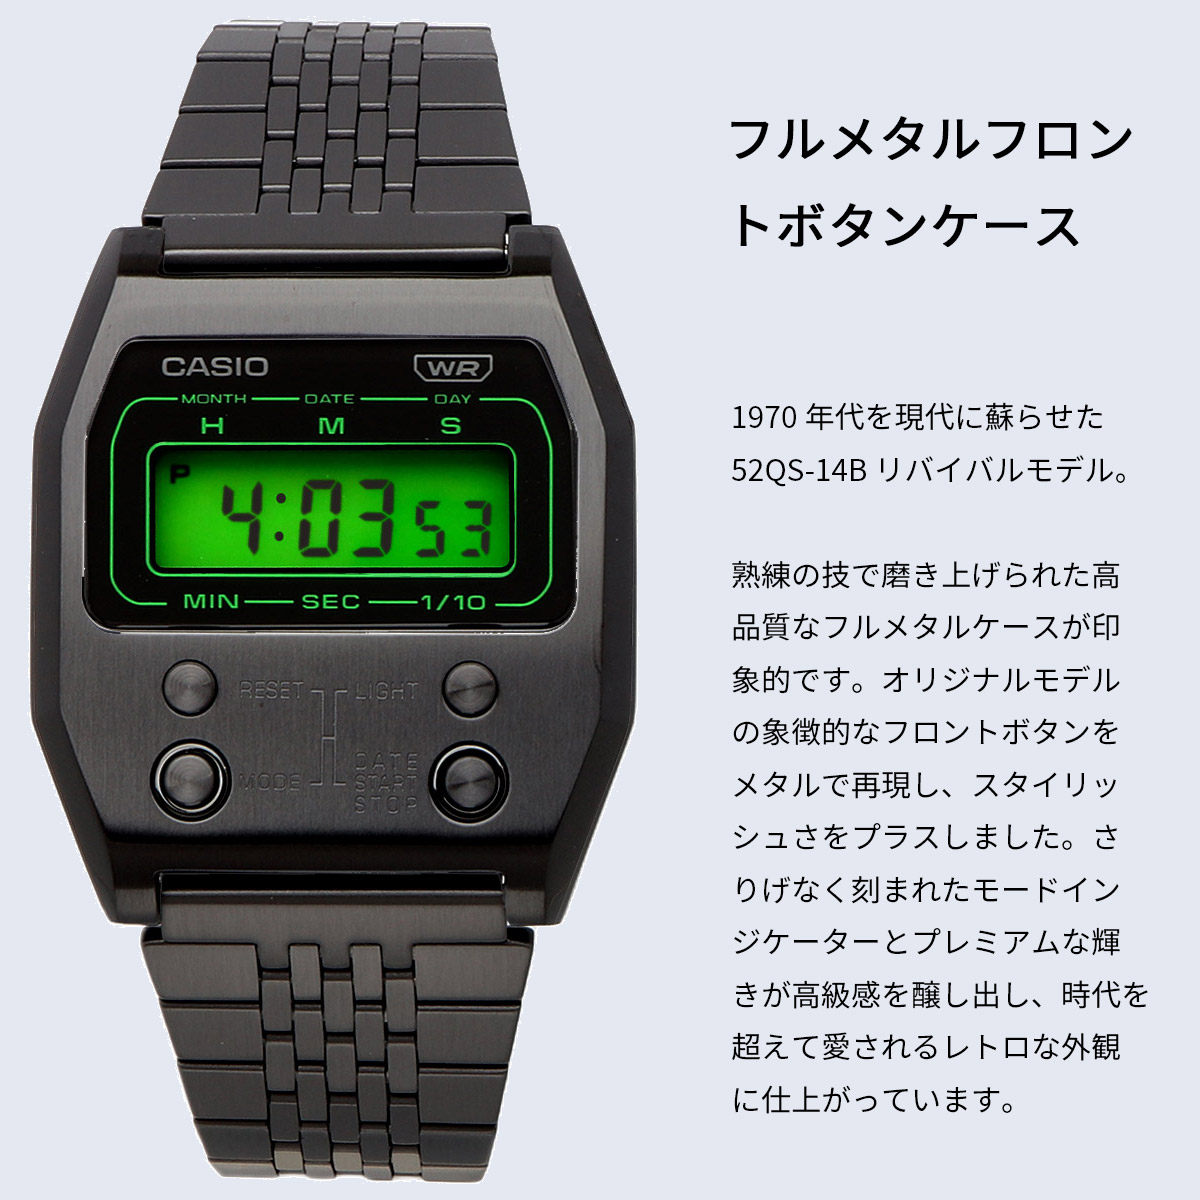 【父の日 ギフト】CASIO カシオ 腕時計 メンズ レディース チープカシオ チプカシ 海外モデル 52QS-14B 復刻モデル デジタル  A1100B-1